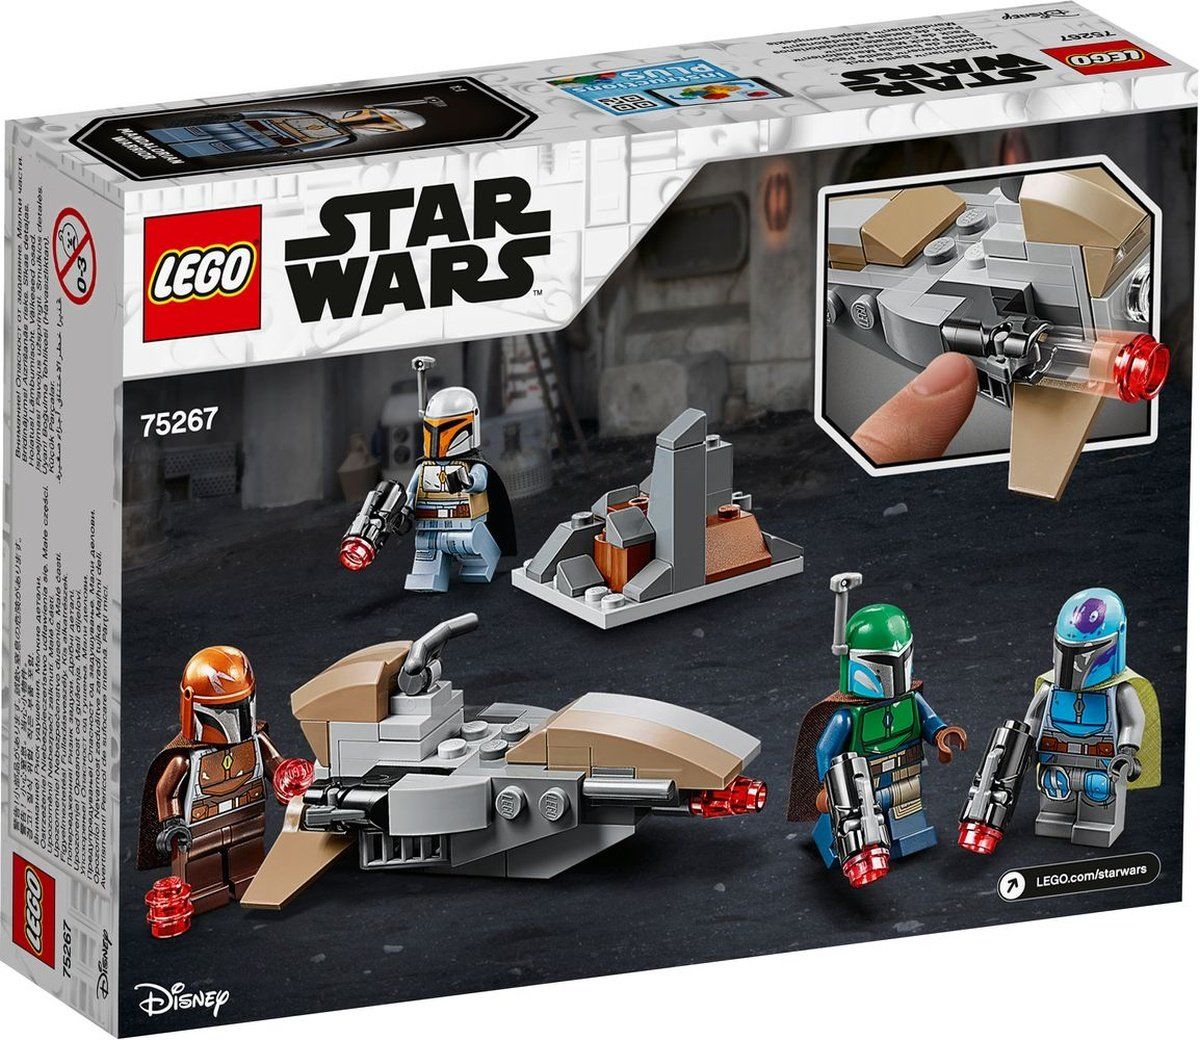 LEGO Star Wars 75267 Mandalorian Battle Pack: Offizielle Bilder